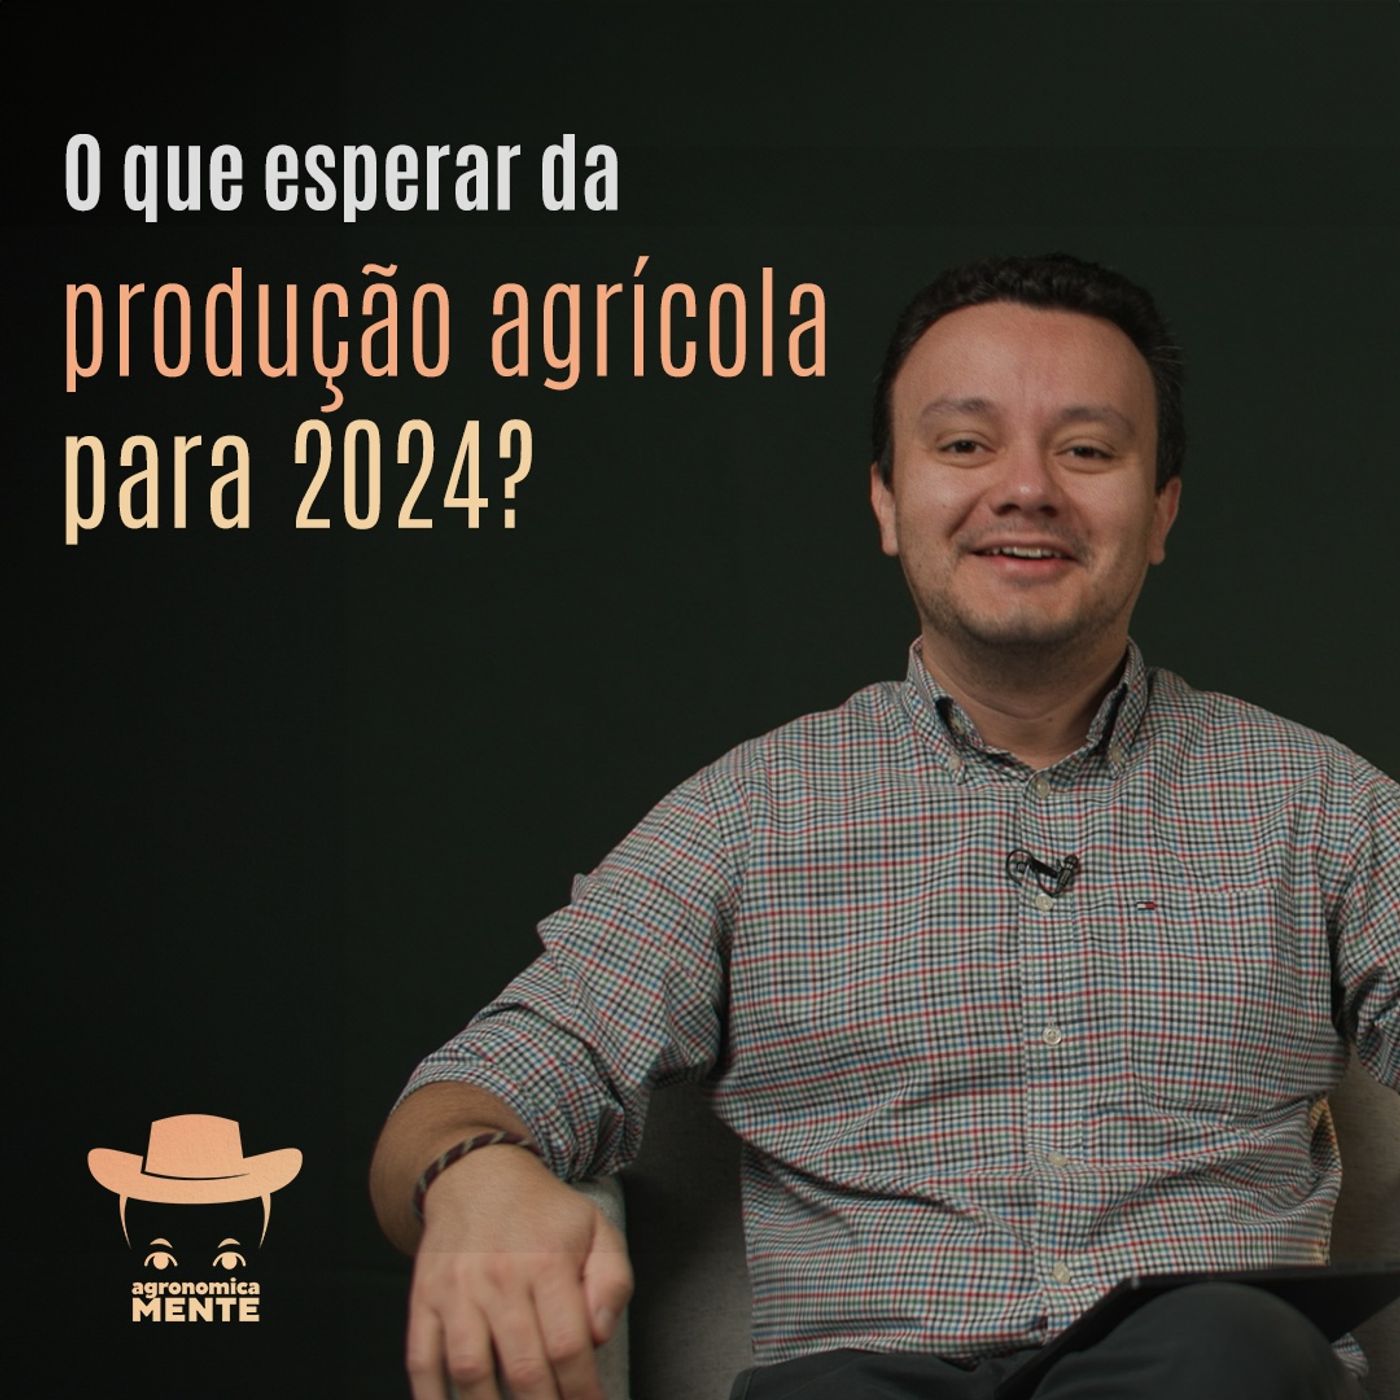 #AGRONOMICAMENTE - O que esperar da produção agrícola para 2024?